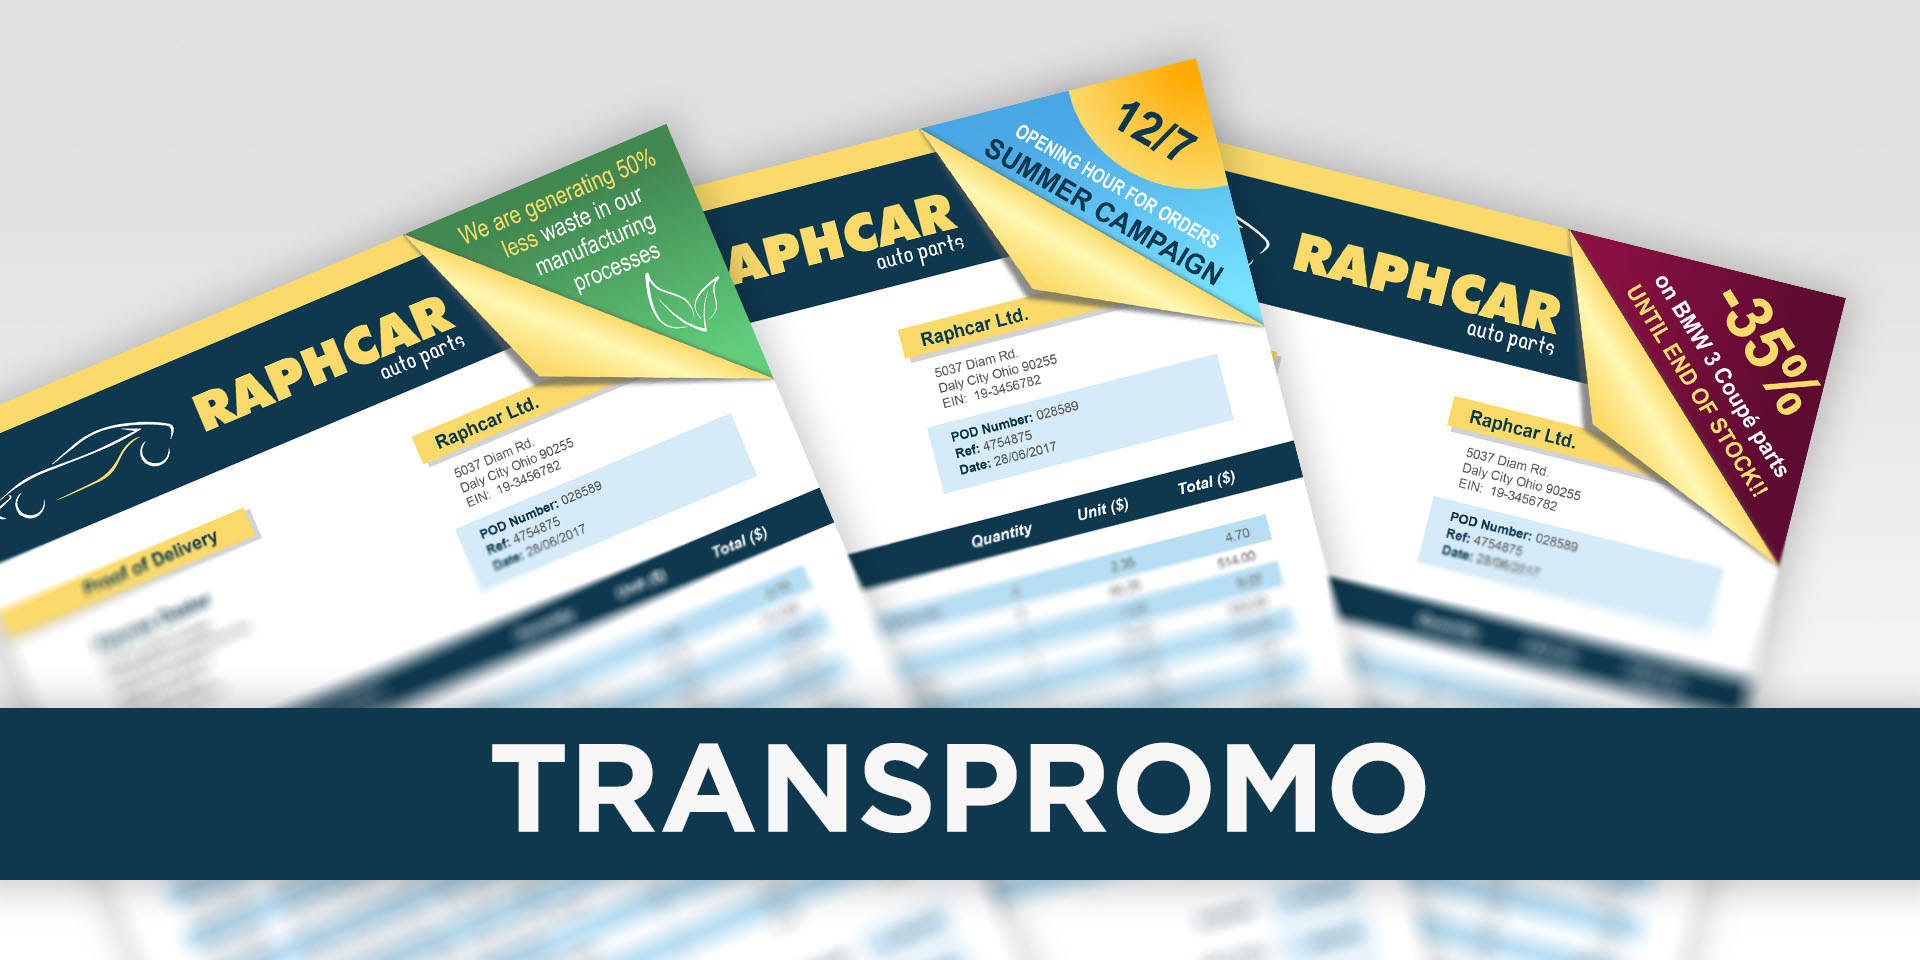 TransPromo se define como la inserción de cualquier contenido de marketing personalizado en los documentos transaccionales